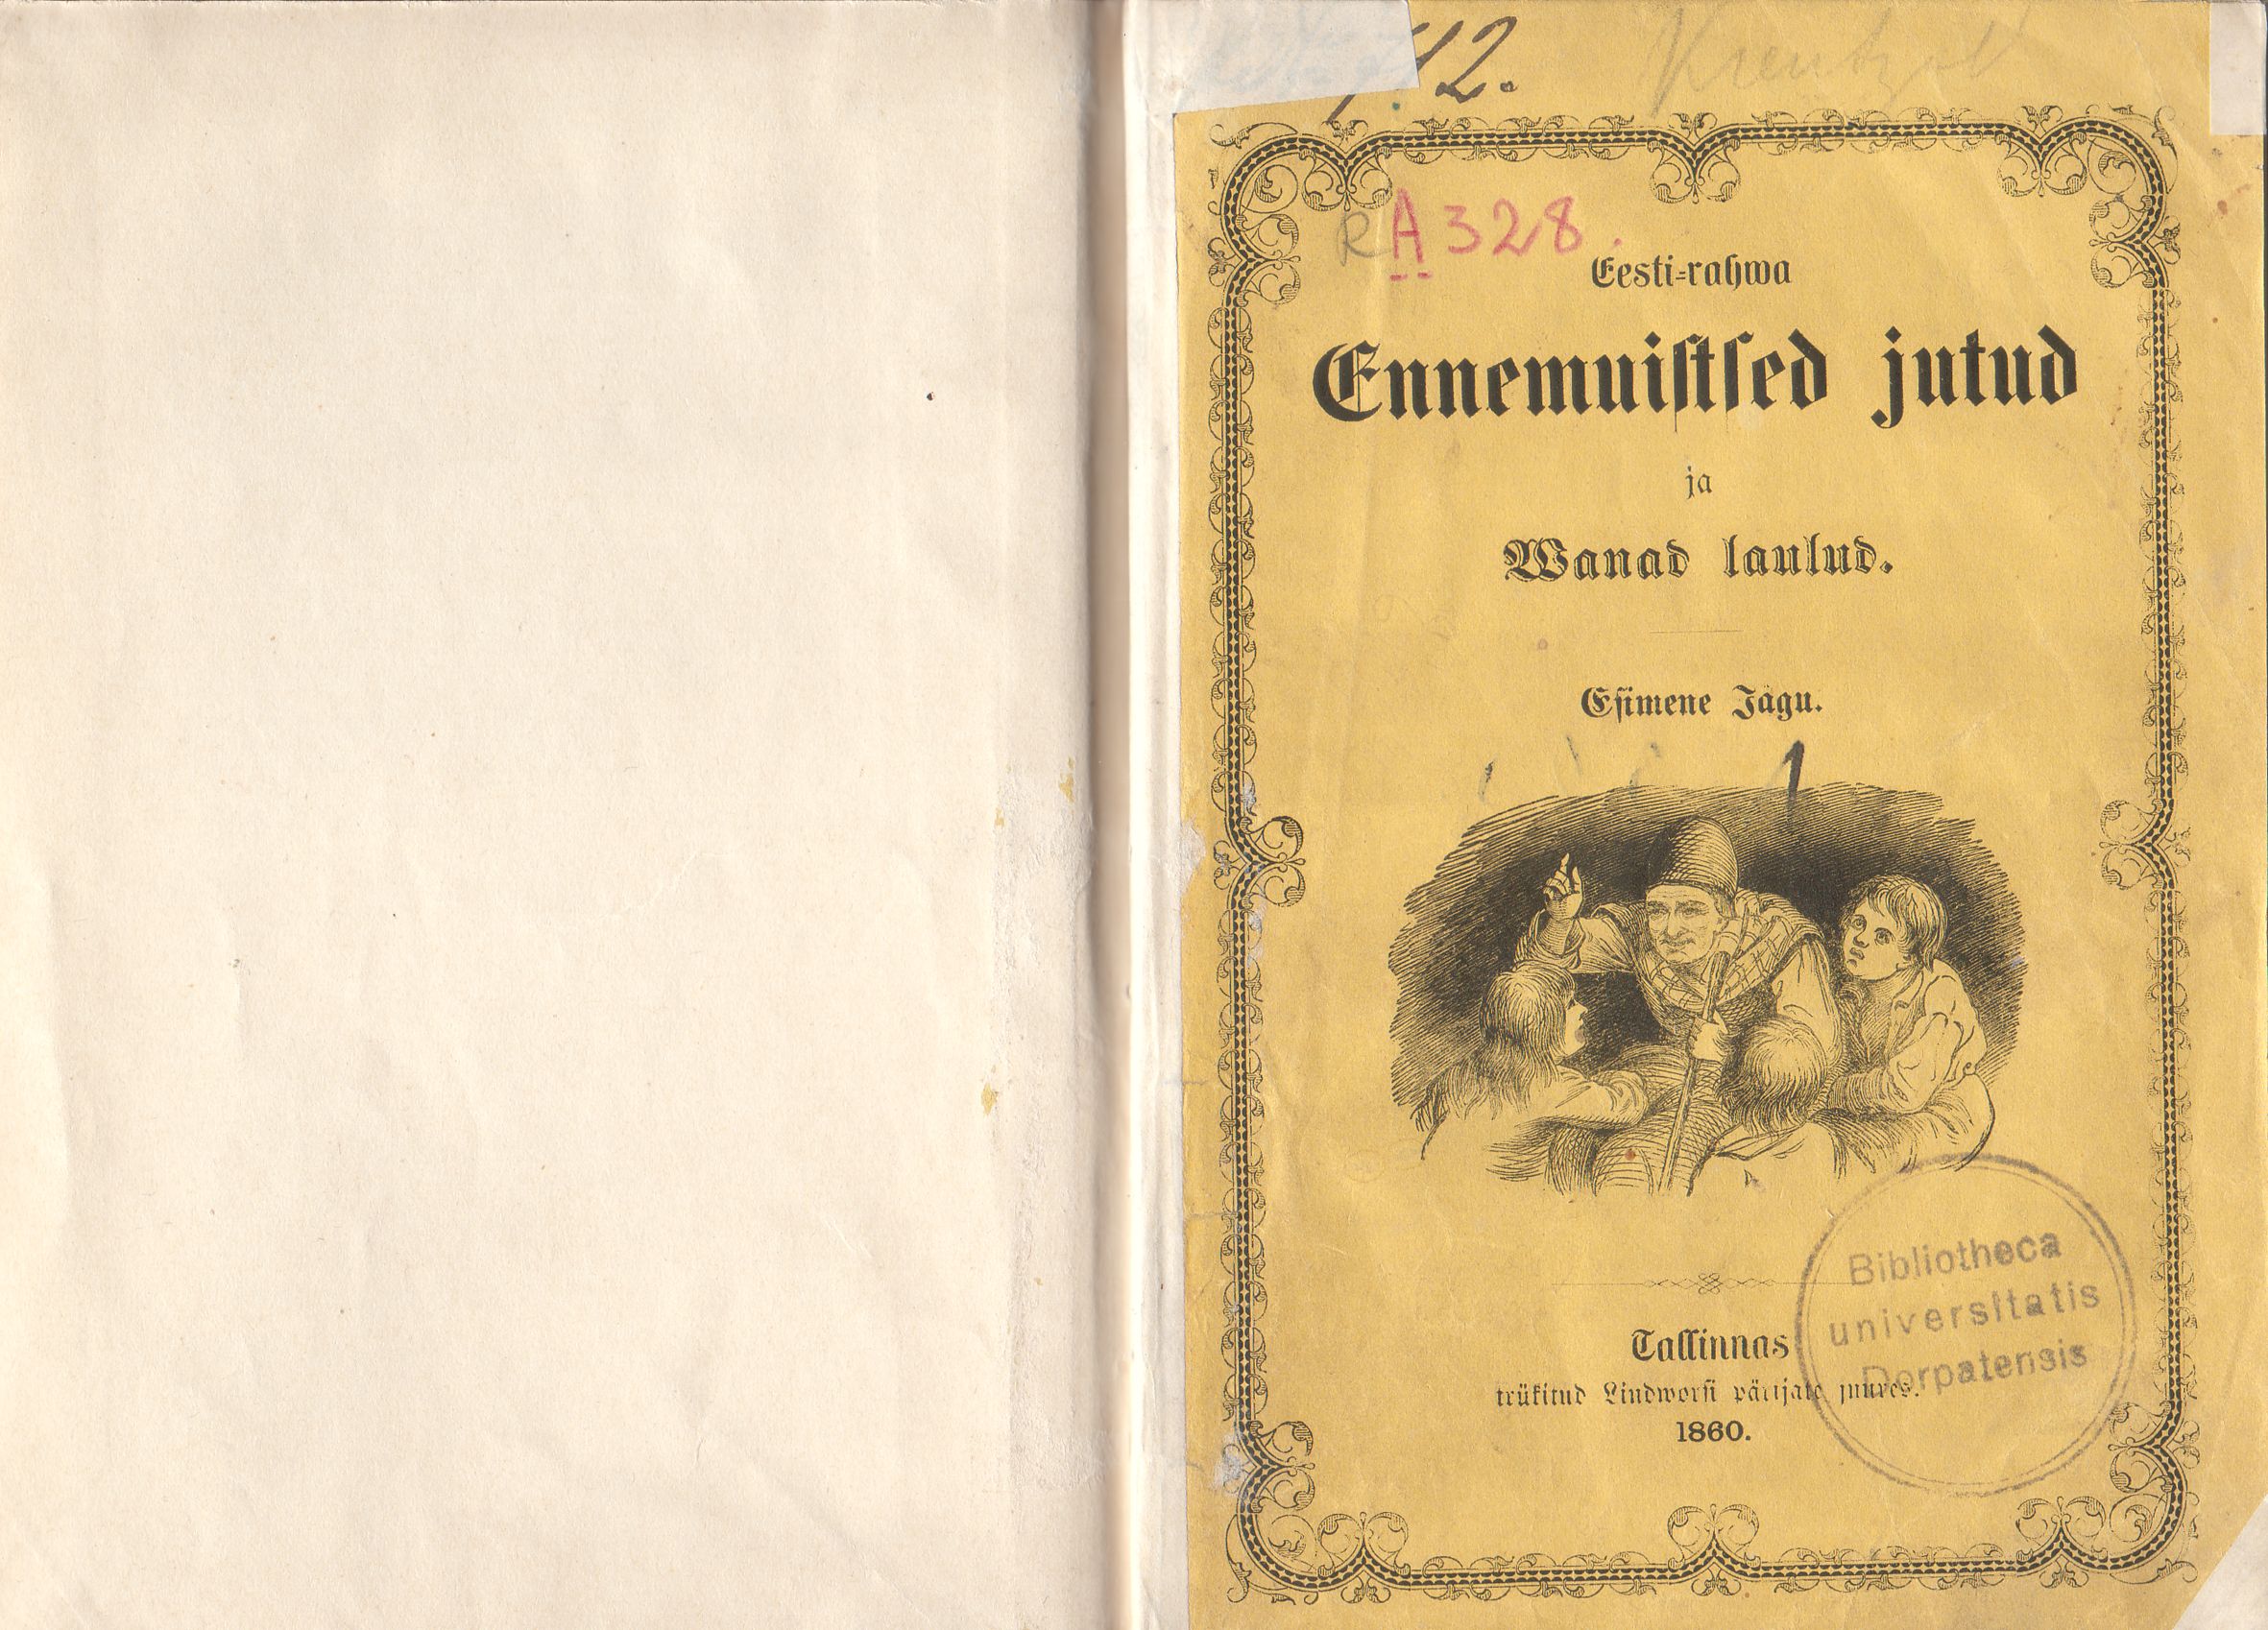 Eesti rahva ennemuistsed jutud ja vanad laulud (1860) | 2. Esikaas